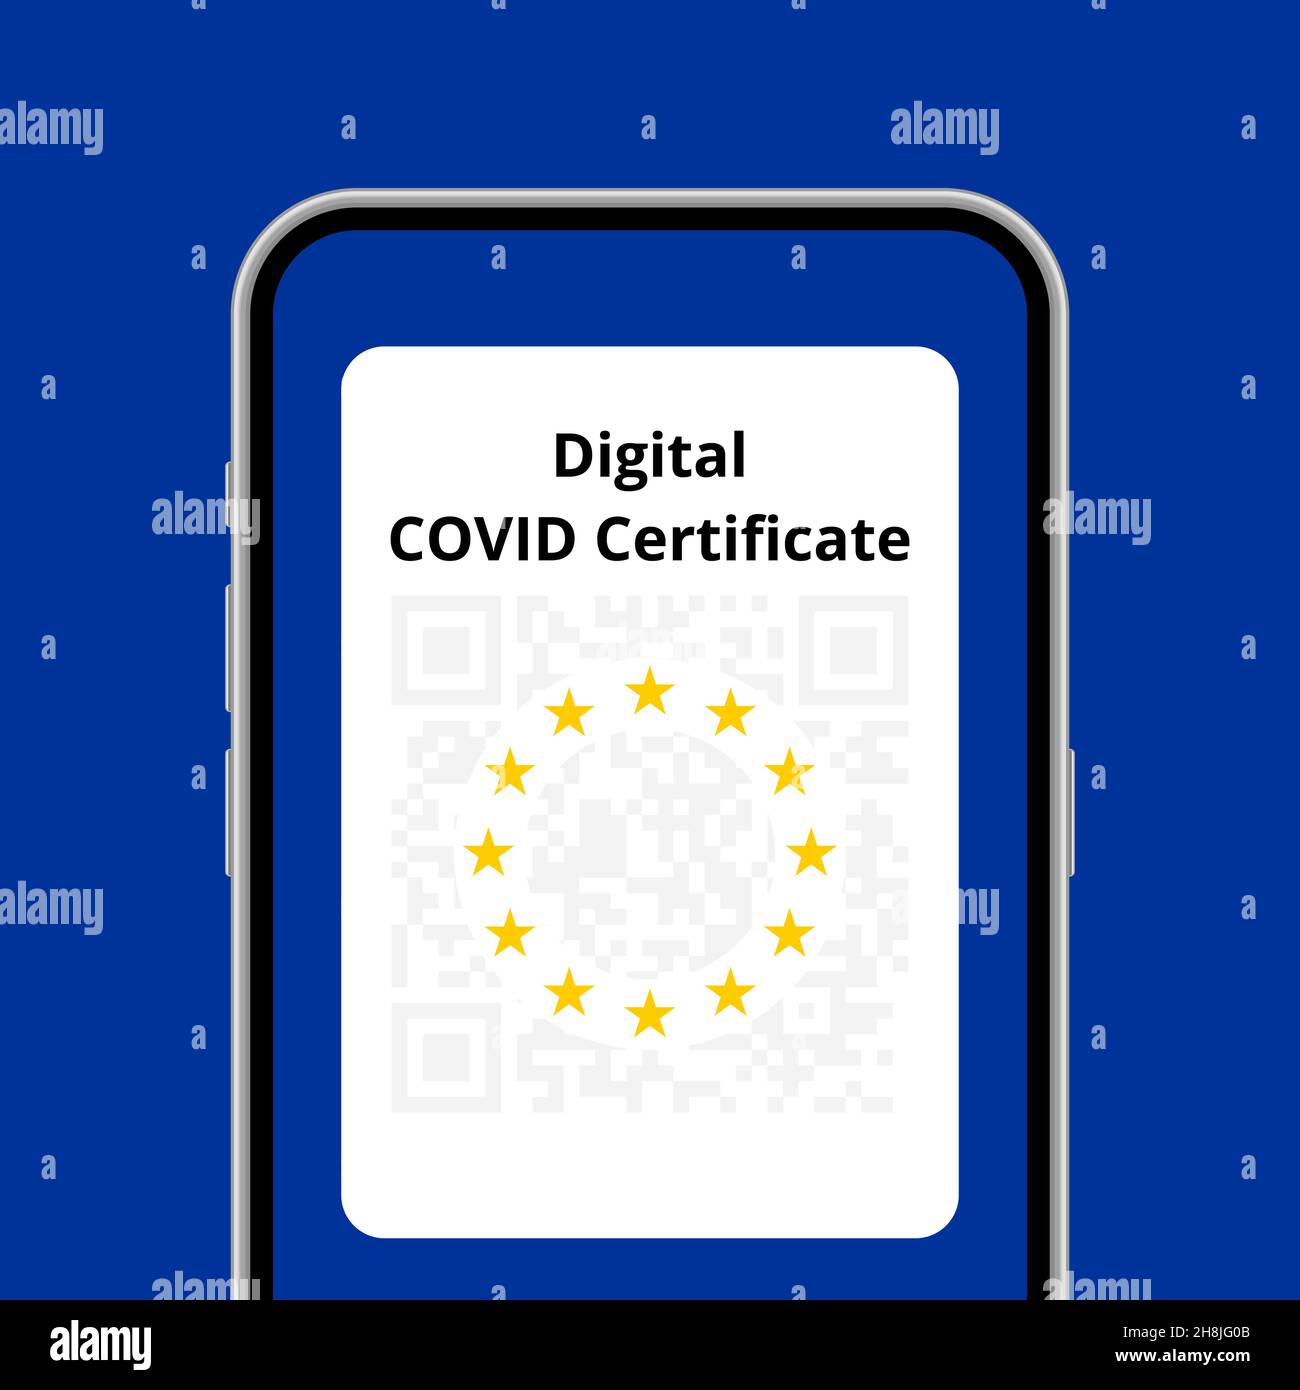 Illustration conceptuelle de l'application de certificat numérique COVID dans le téléphone Illustration de Vecteur